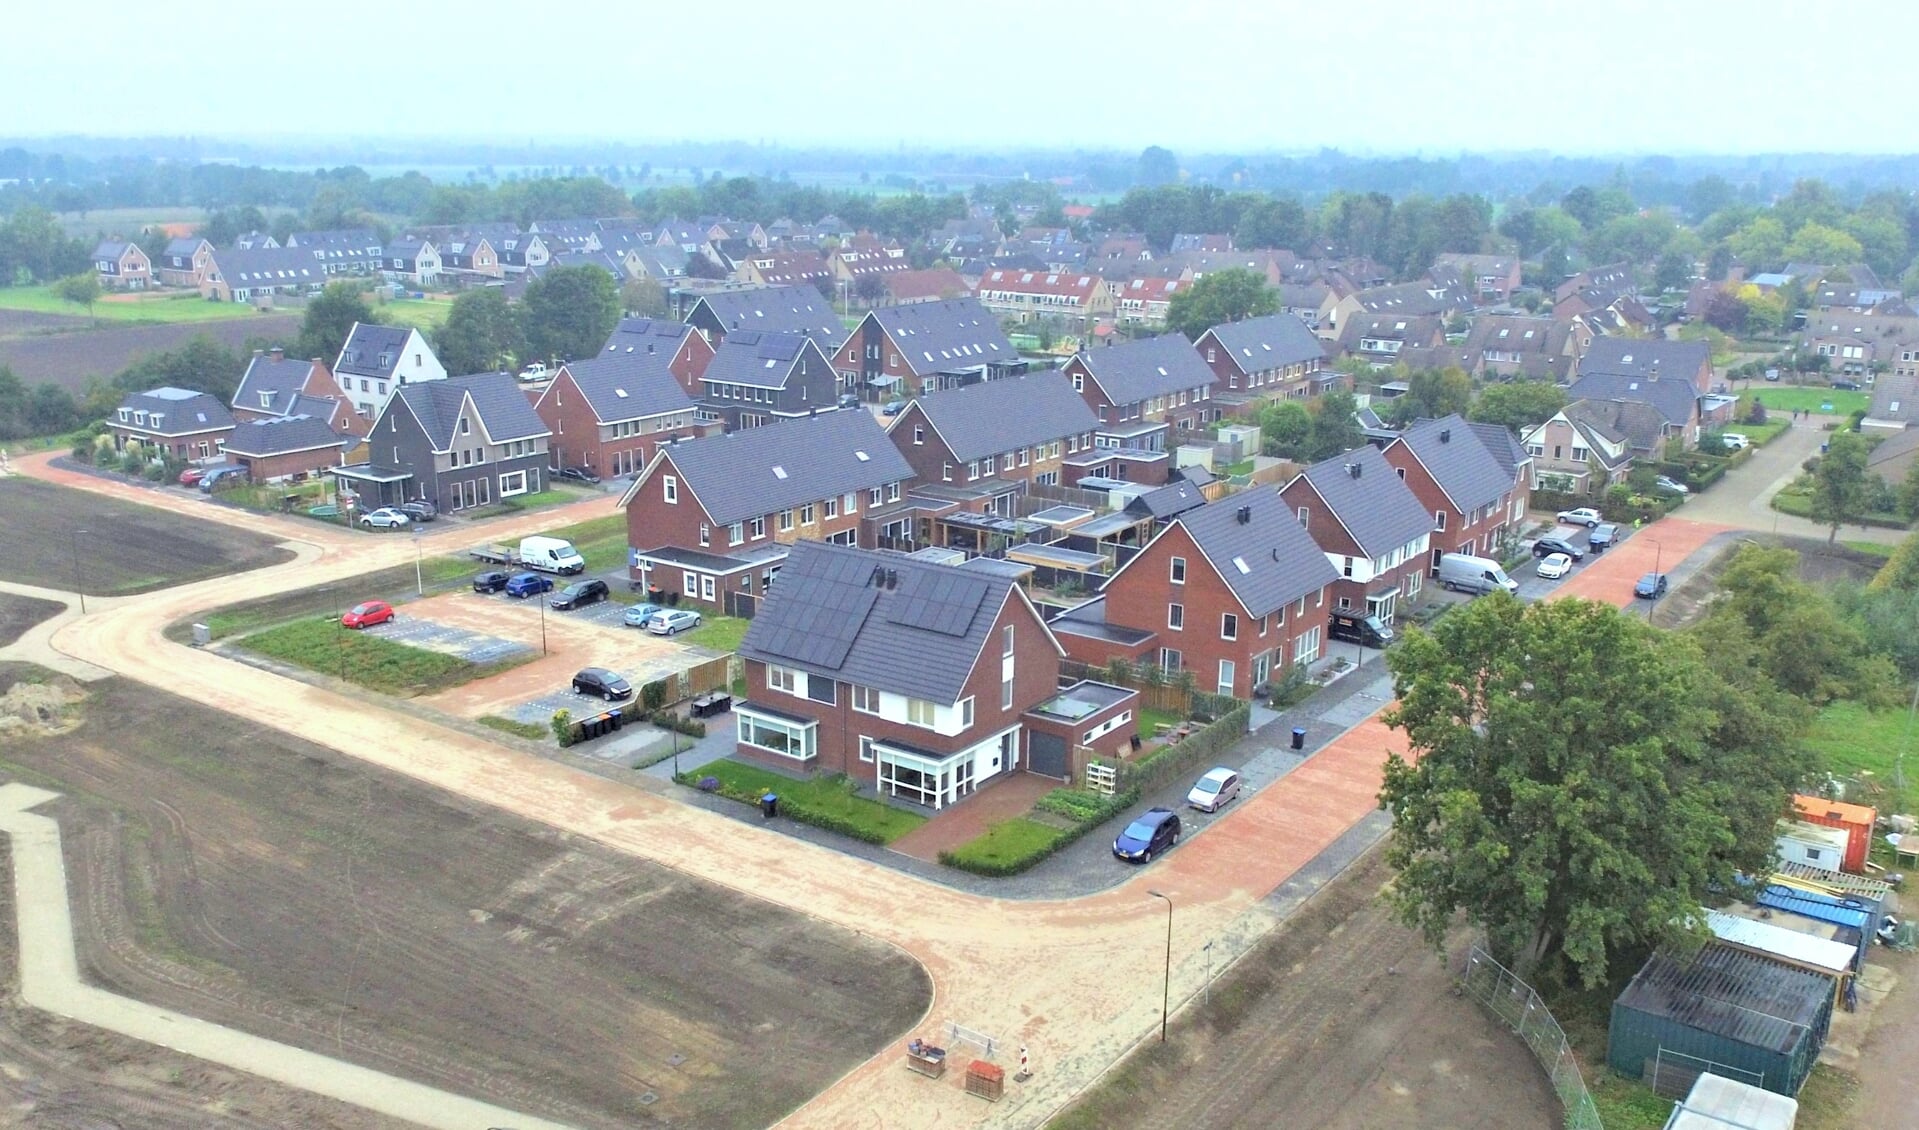 Nieuwbouwwijk Dwarsakker in Zwartebroek, op een afstand van minder dan tien kilometer van de Amersfoortse wijk Vathorst.